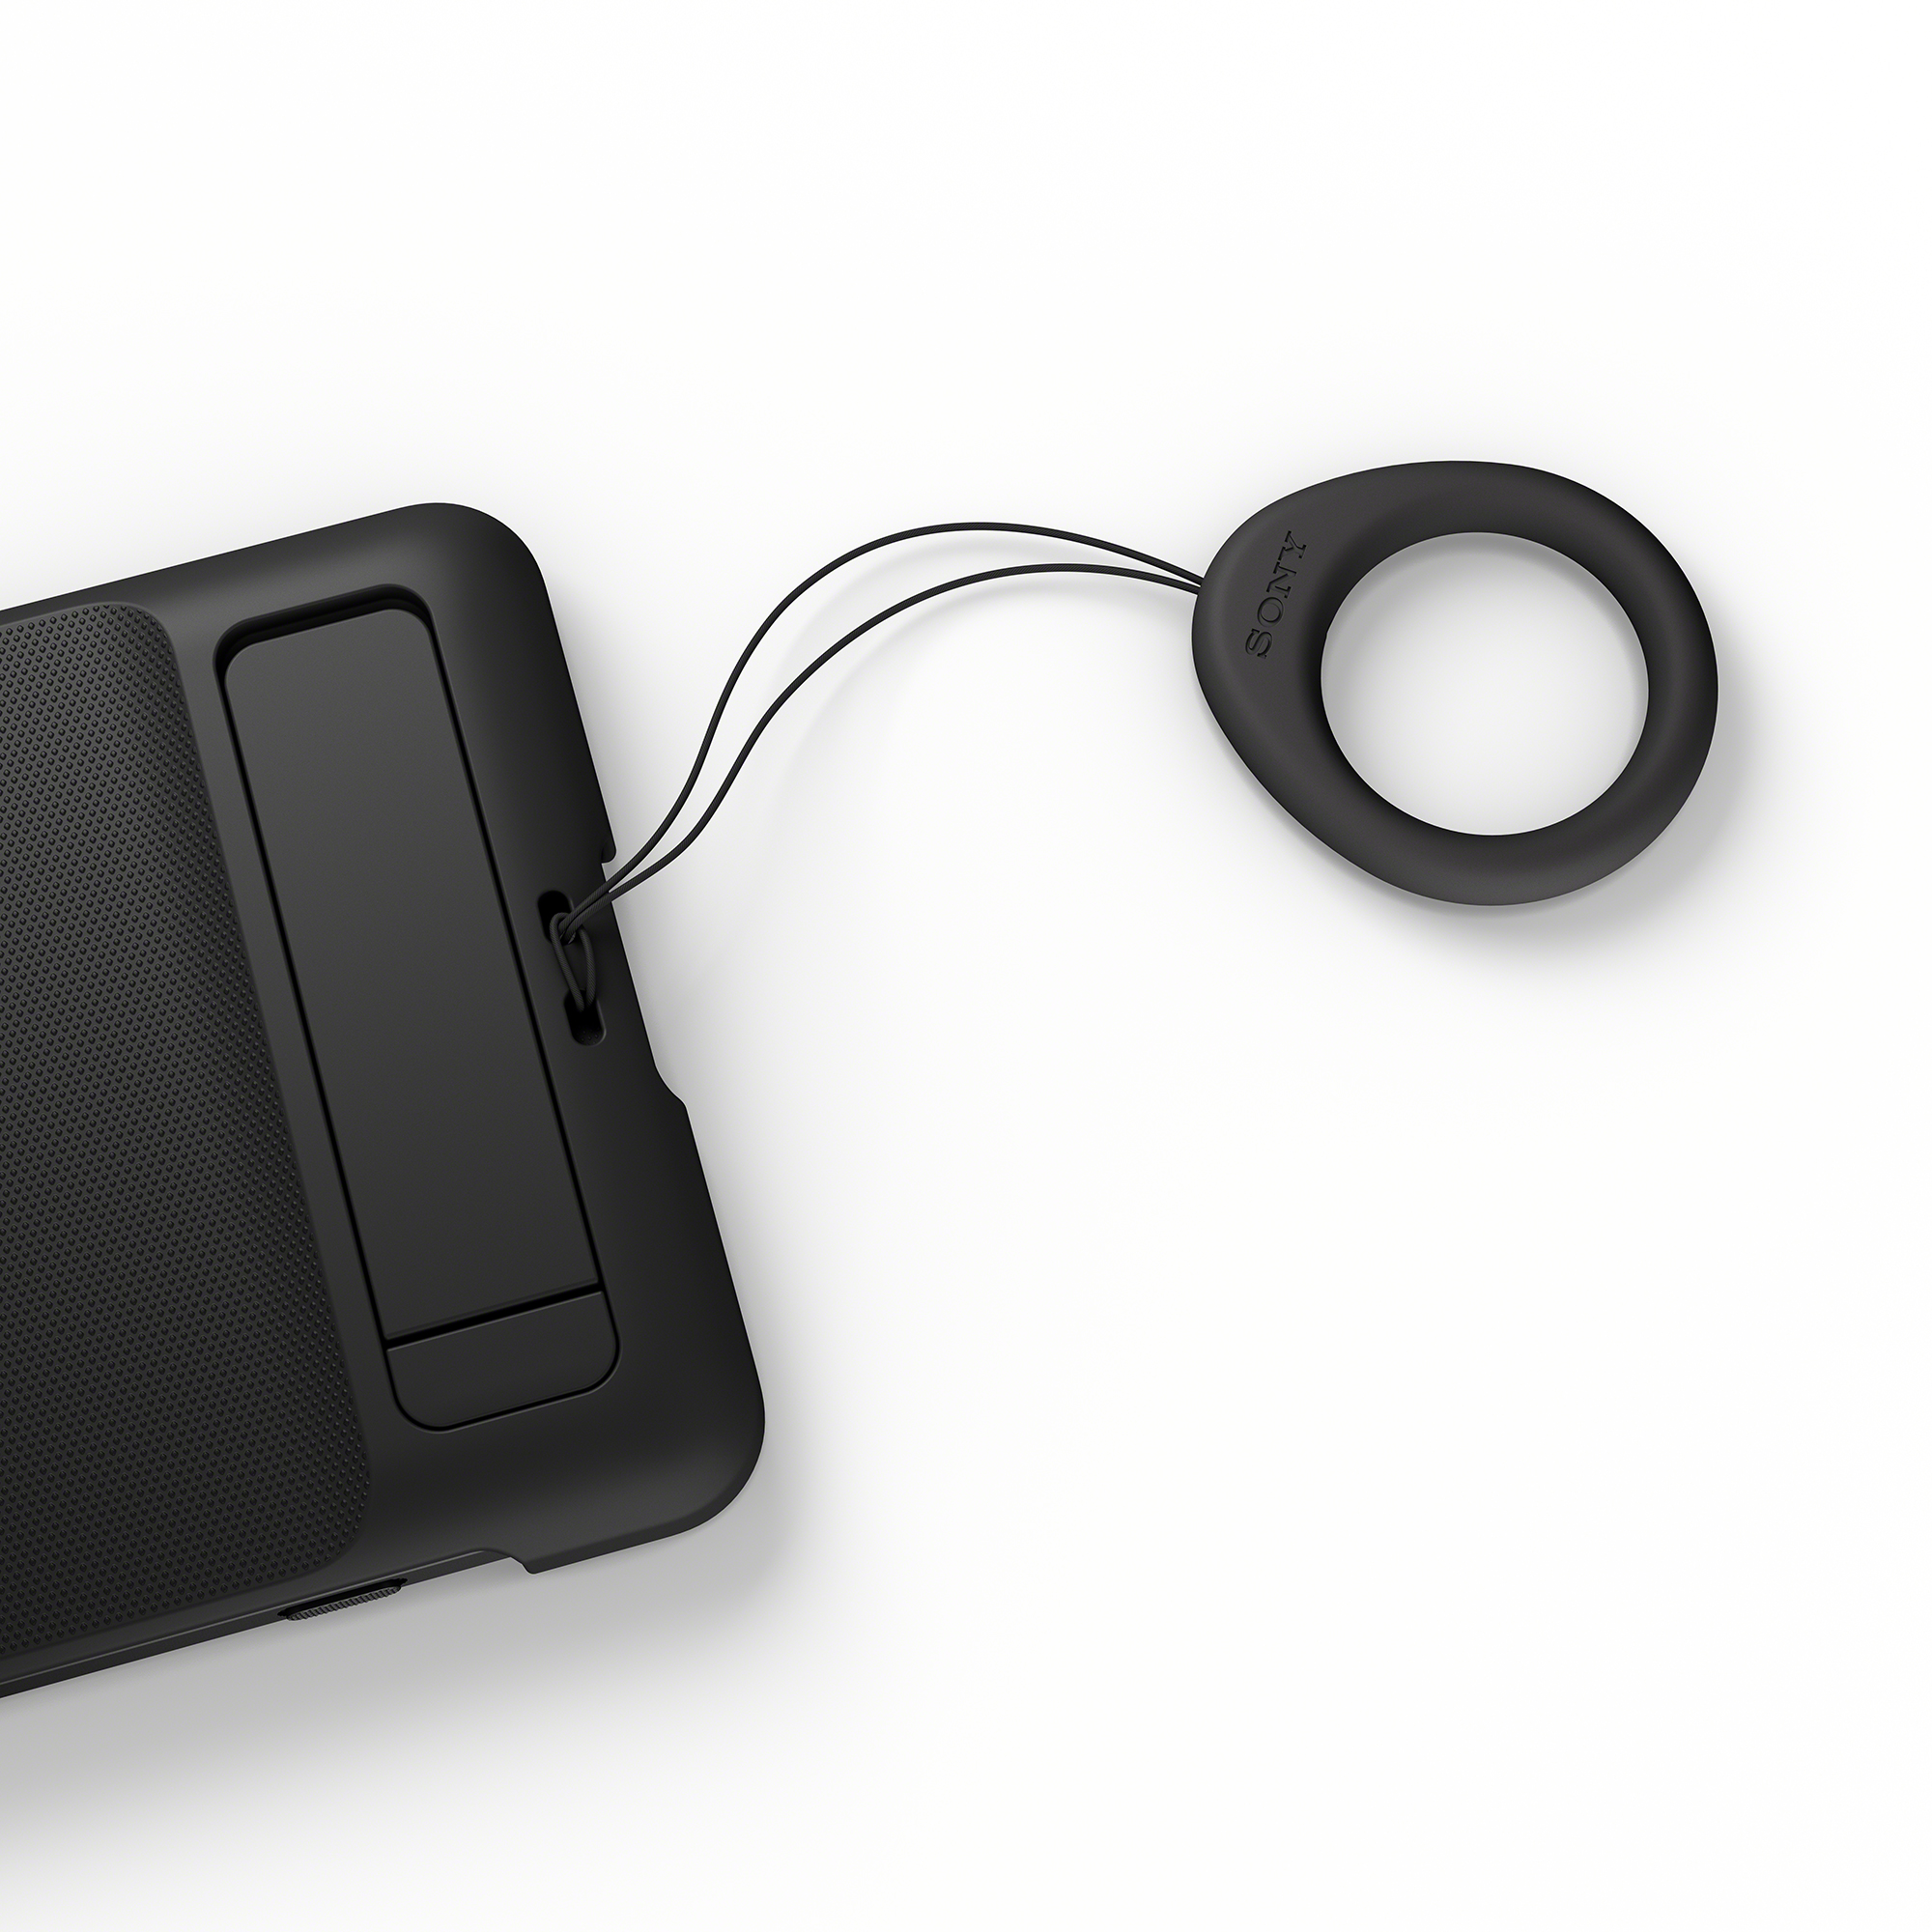 黑色Xperia 1 VI 時尚保護殼上裝有隨附環帶的圖片。